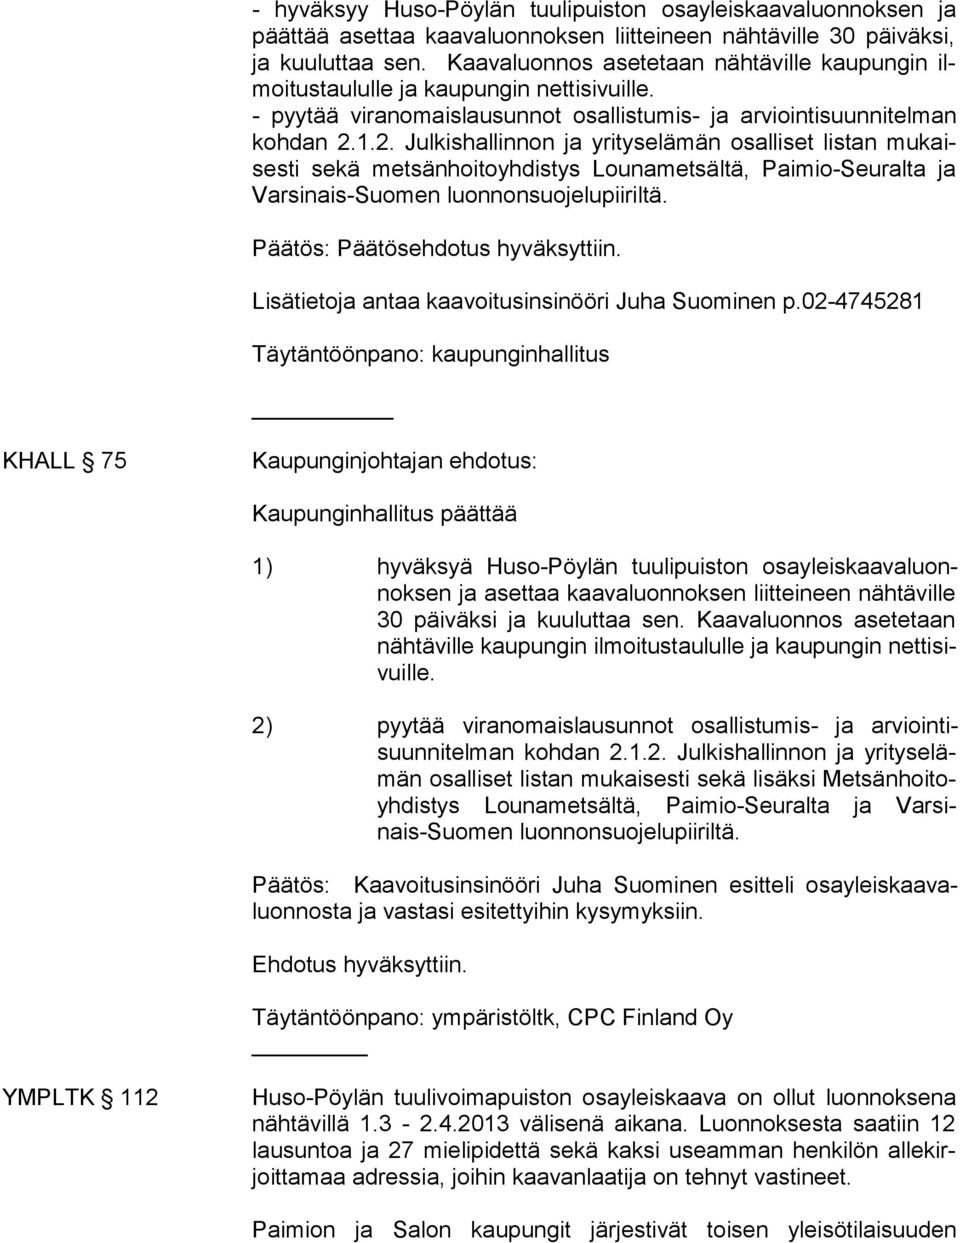 1.2. Julkis hallinnon ja yrityselämän osalliset listan mukaisesti sekä metsänhoi toyhdistys Lounametsältä, Pai mio-seu ralta ja Varsinais-Suomen luonnonsuojelupiiriltä.